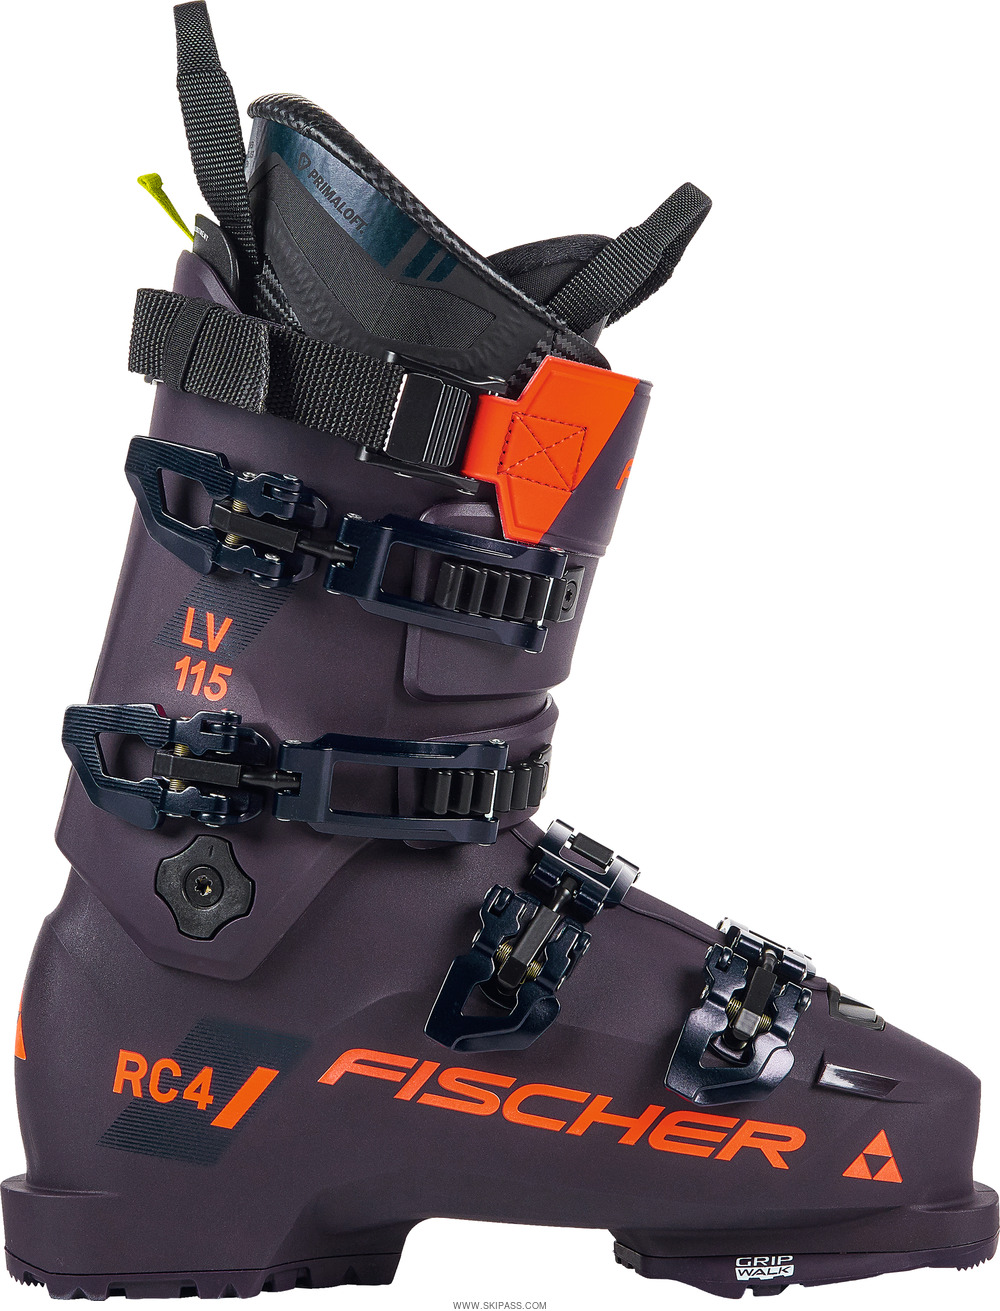 Fischer Rc4 115 lv